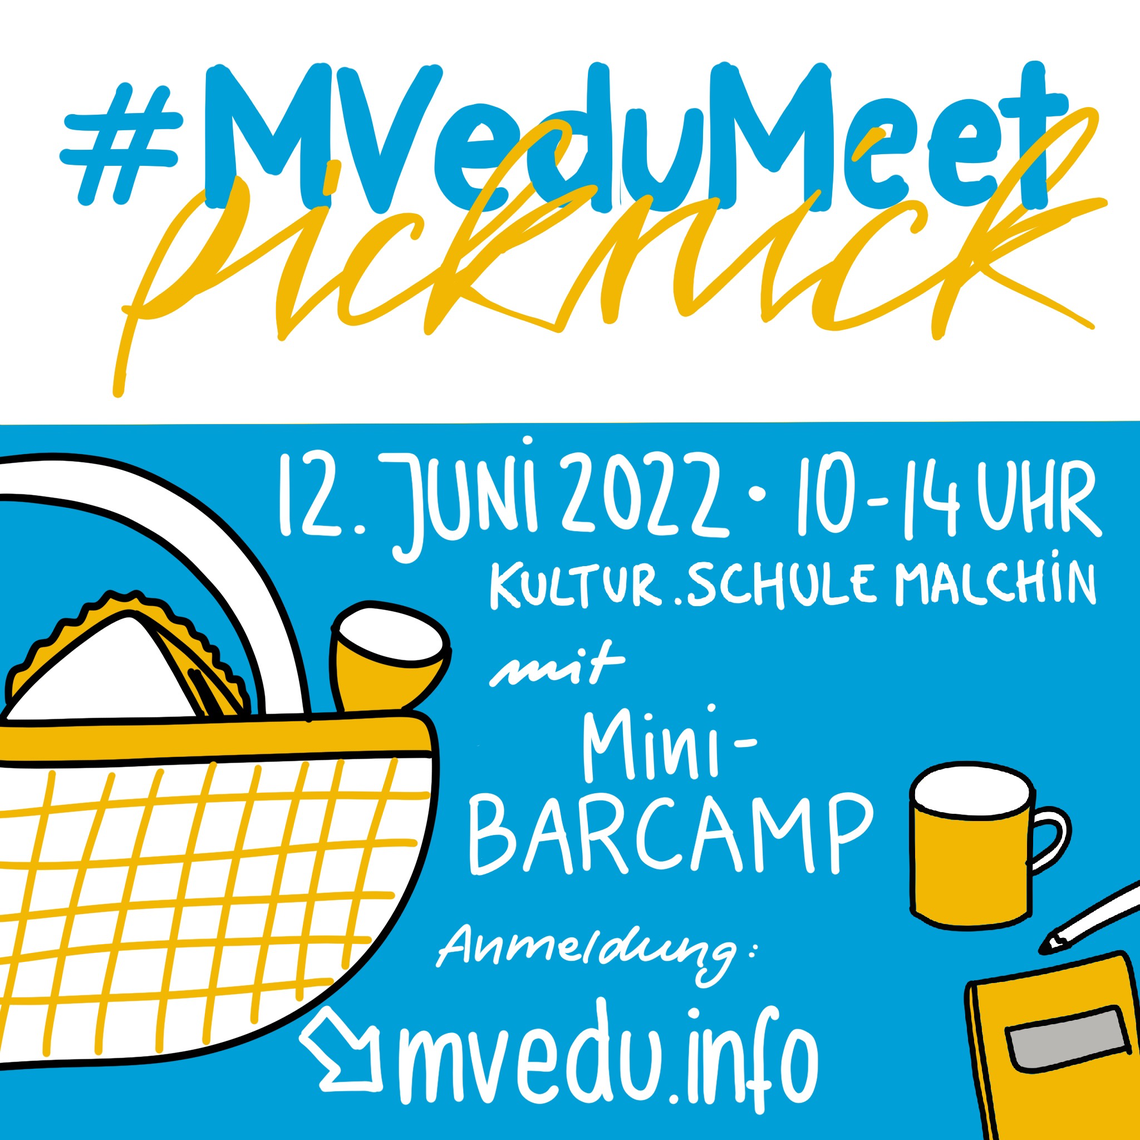 Logo #MVeduMiniBarCamp